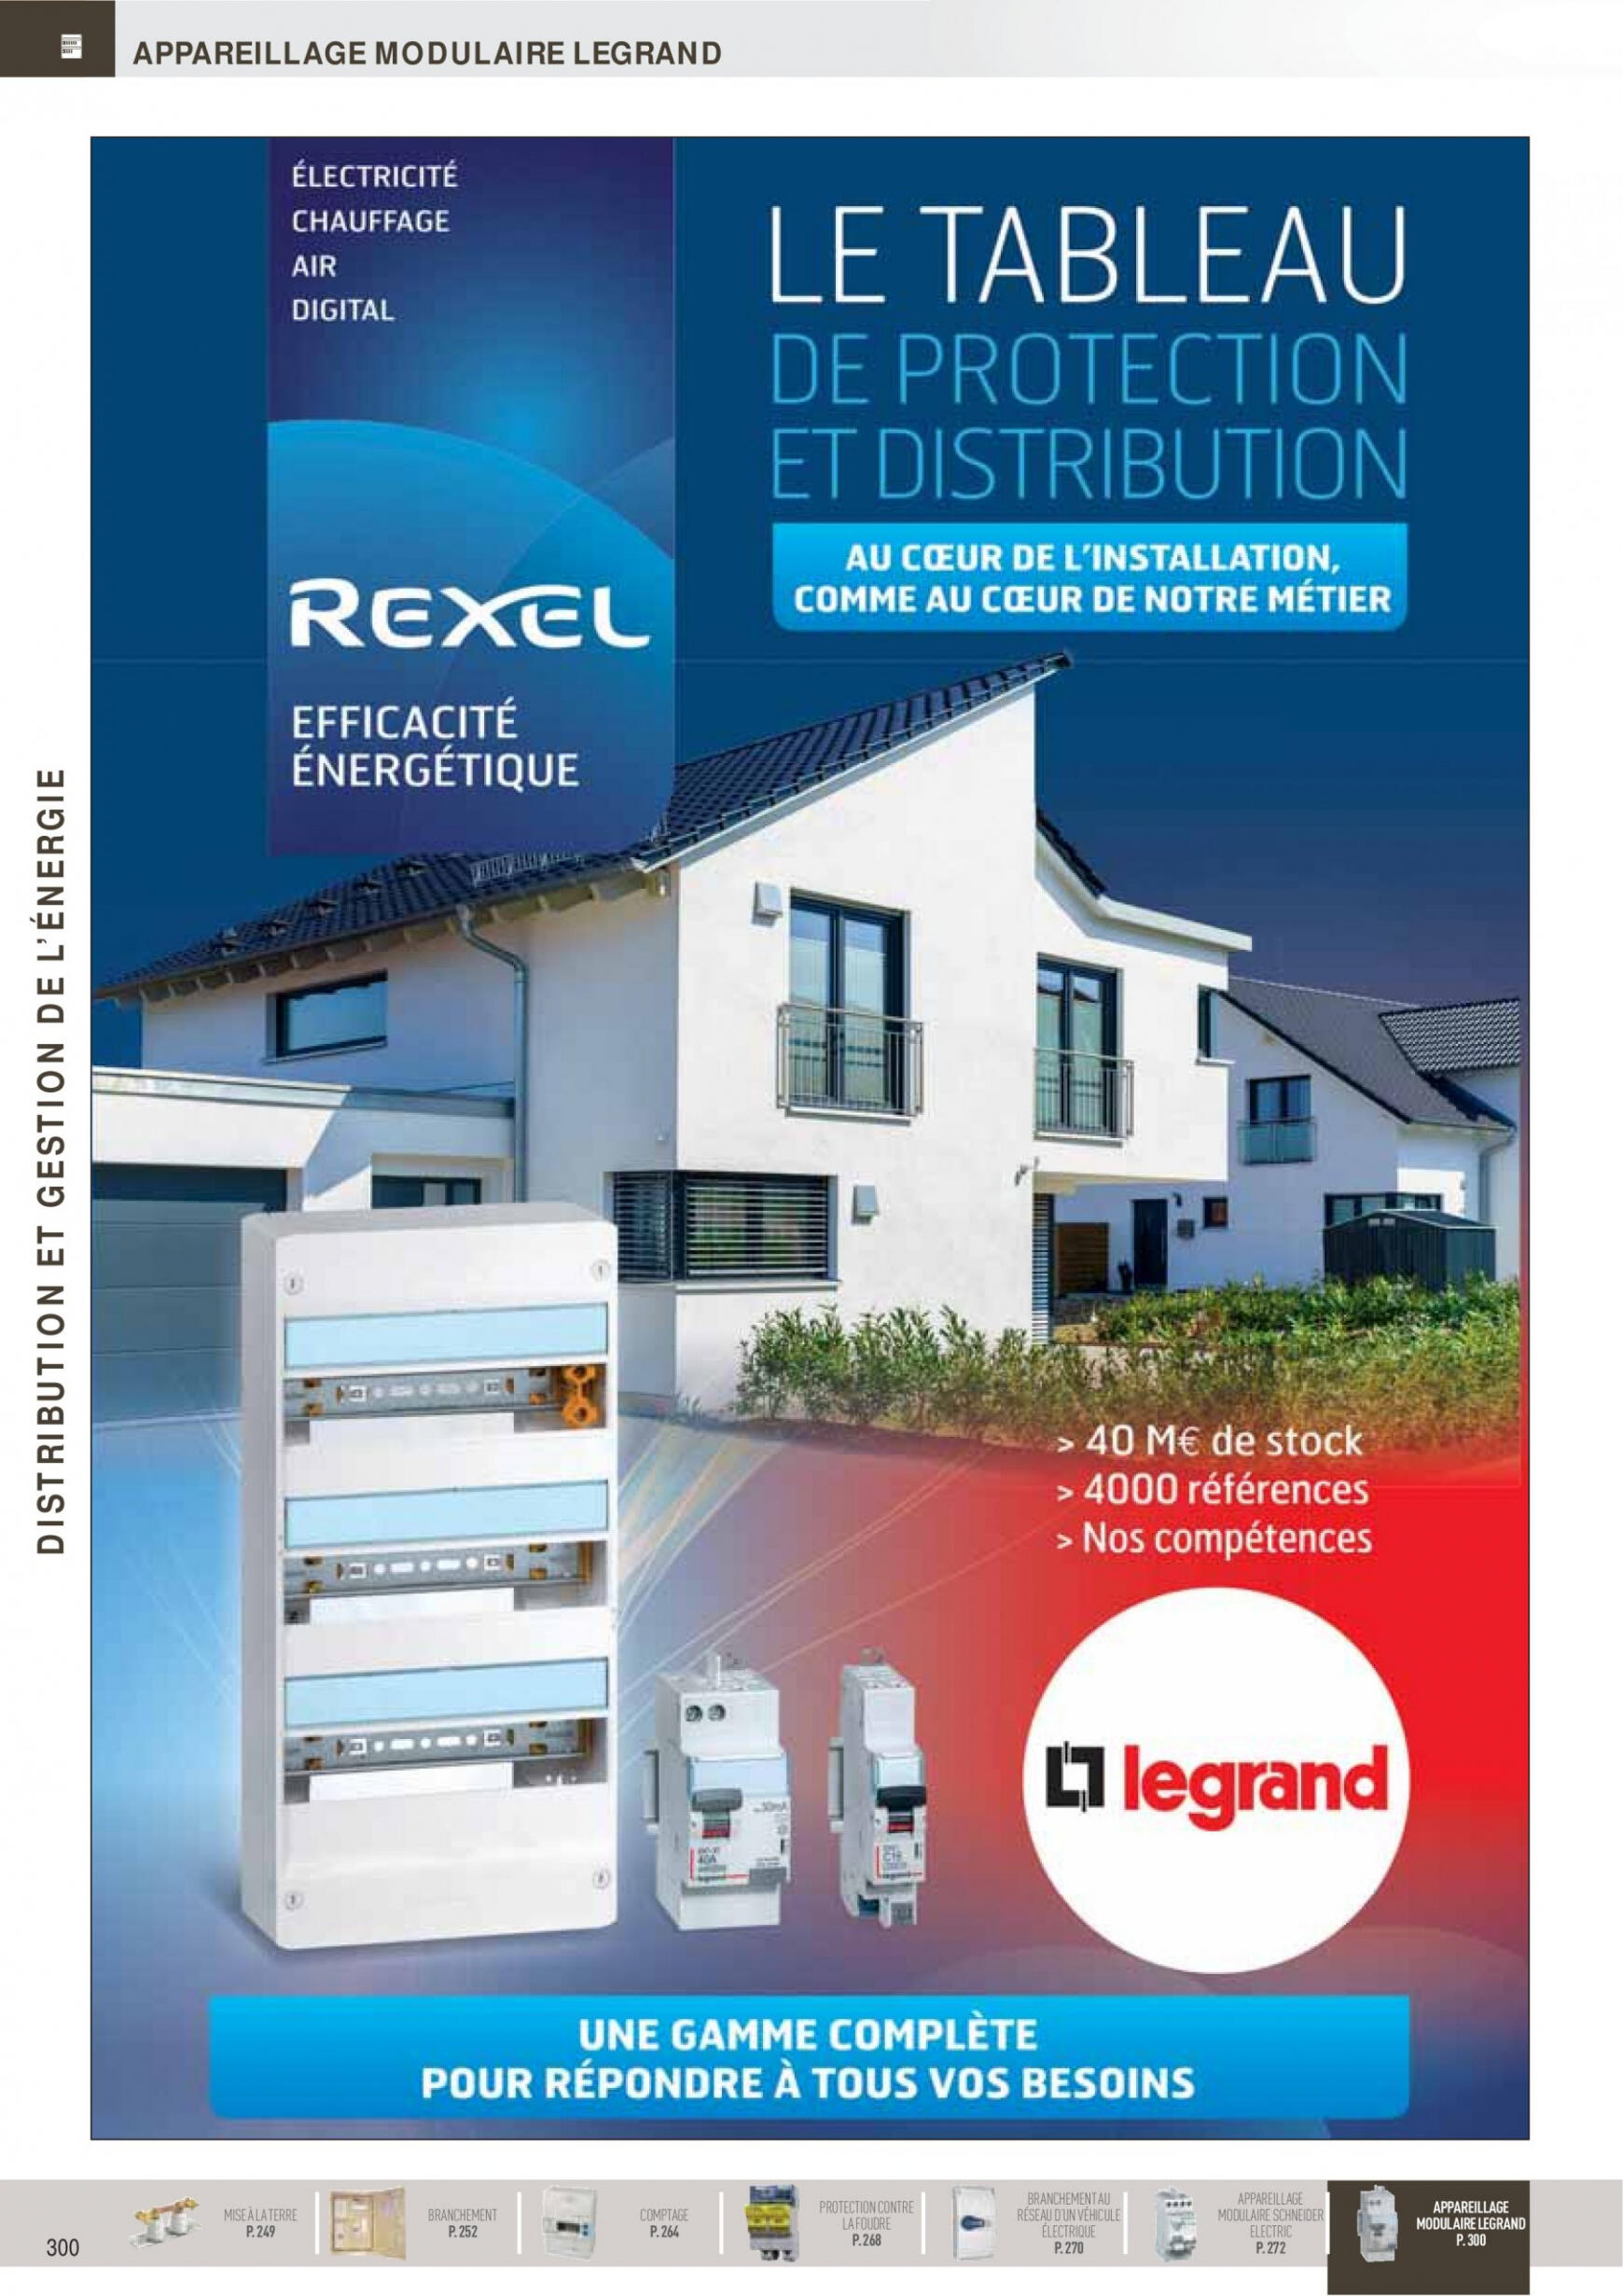 rexel - Rexel - Distribution et Gestion de l'Energie - page: 54